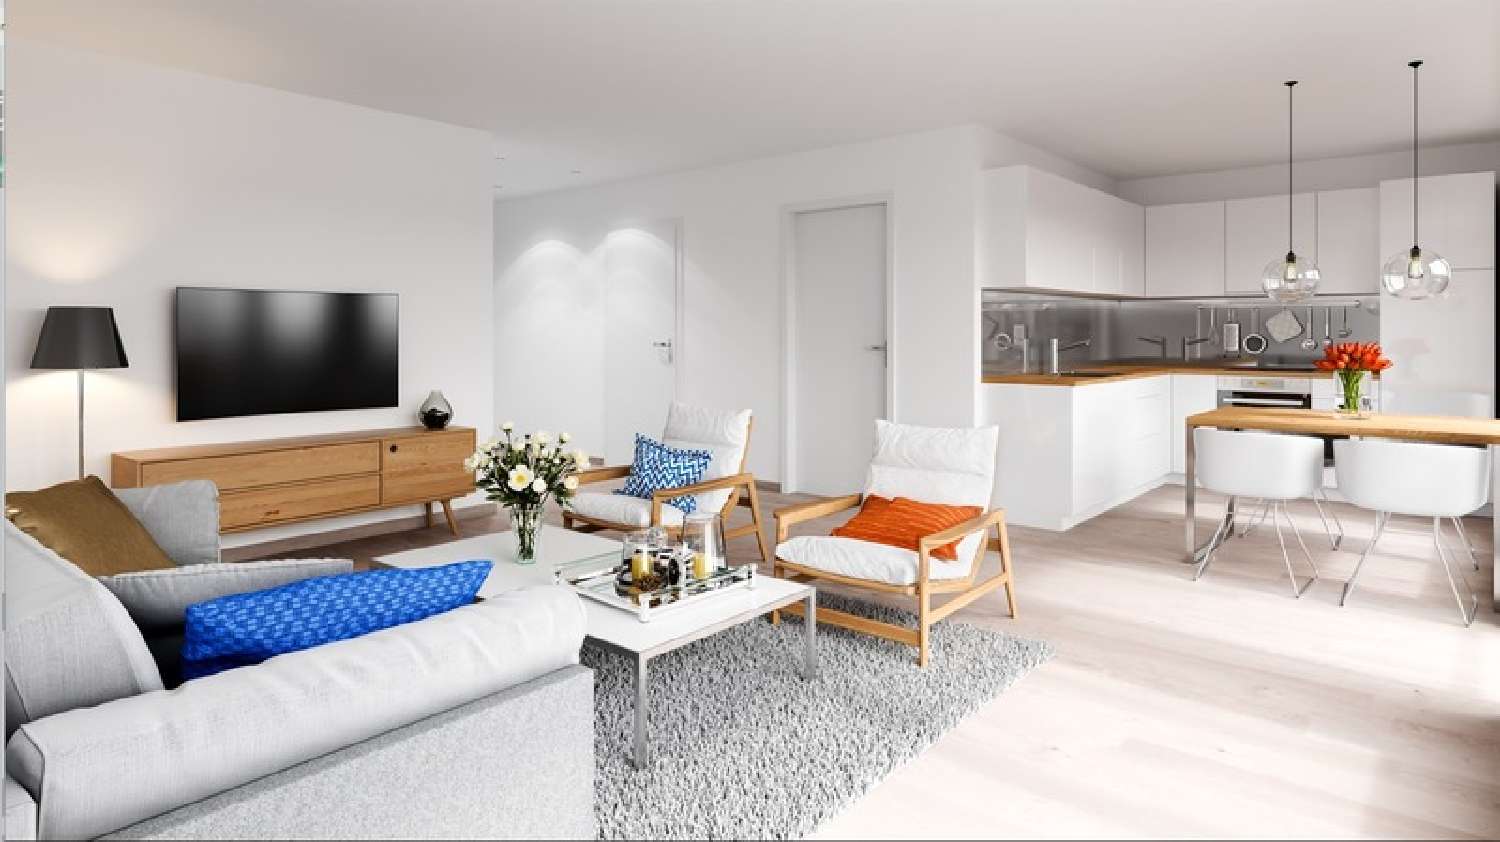 Chambéry Savoie Wohnung/ Apartment Bild 6868487